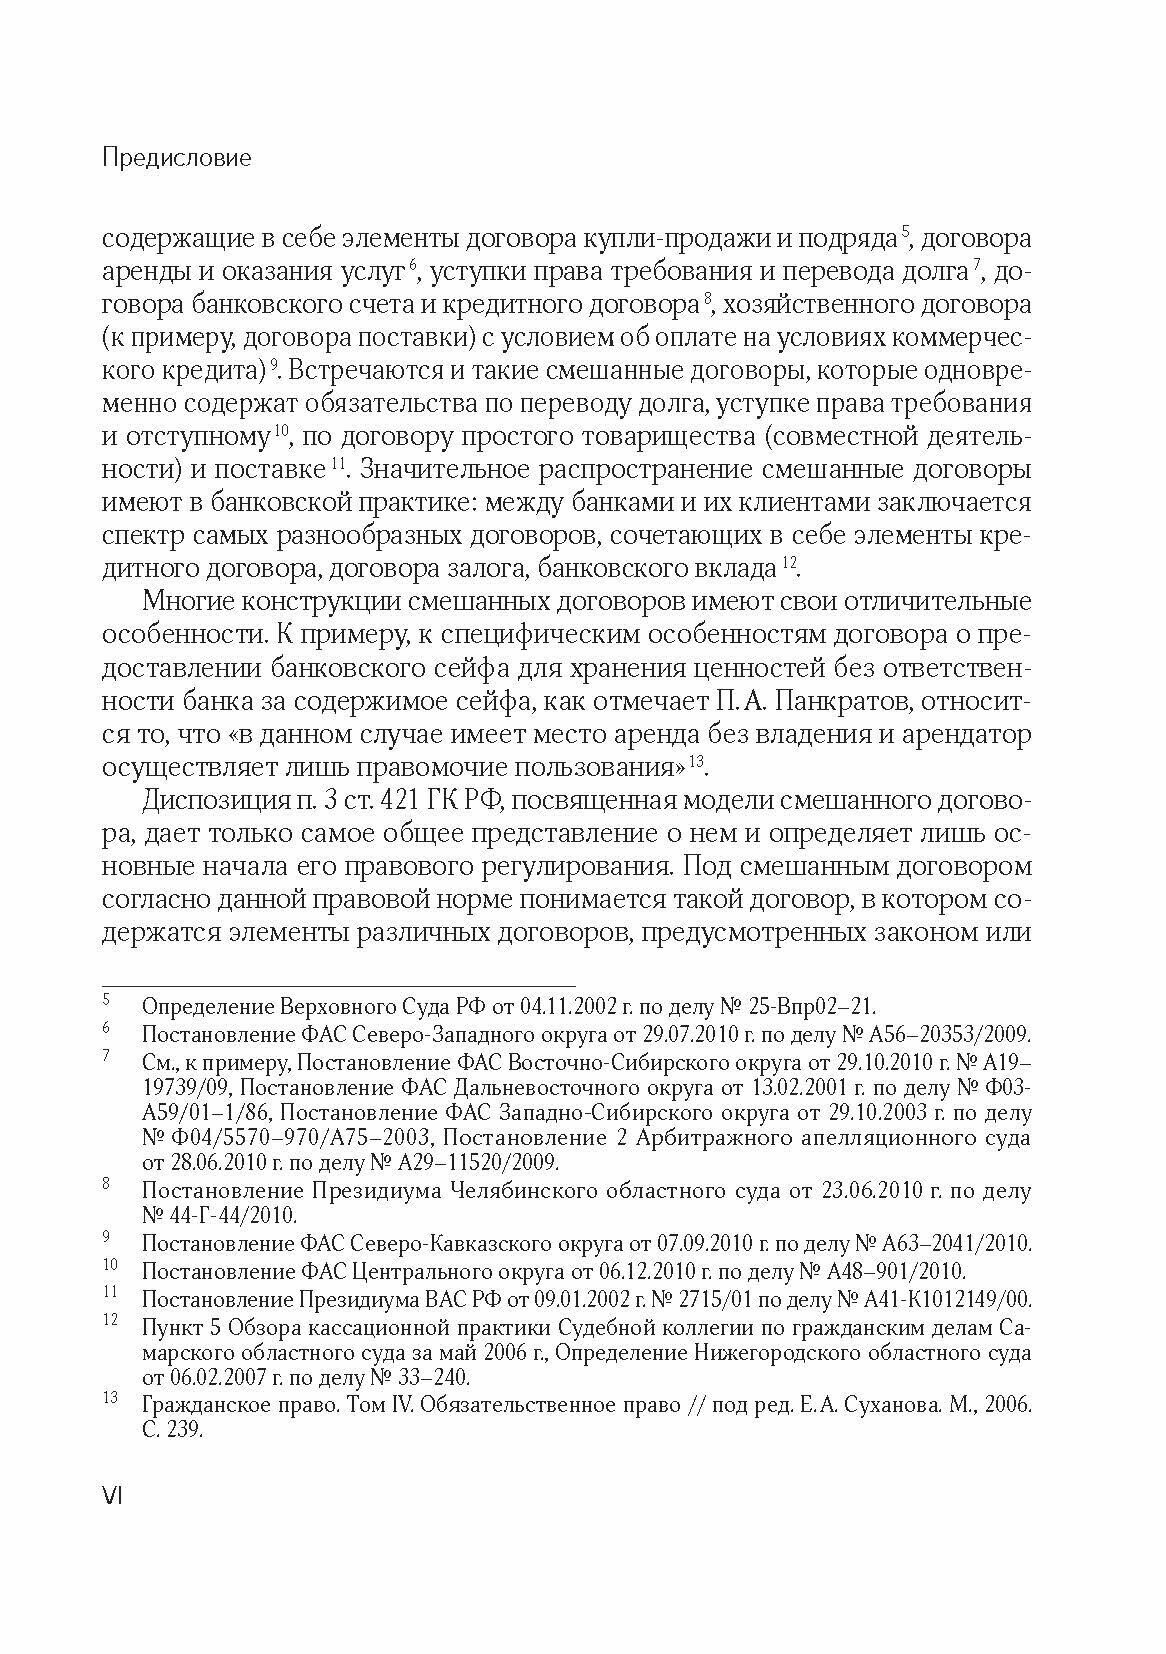 Смешанный договор в гражданском праве РФ - фото №5